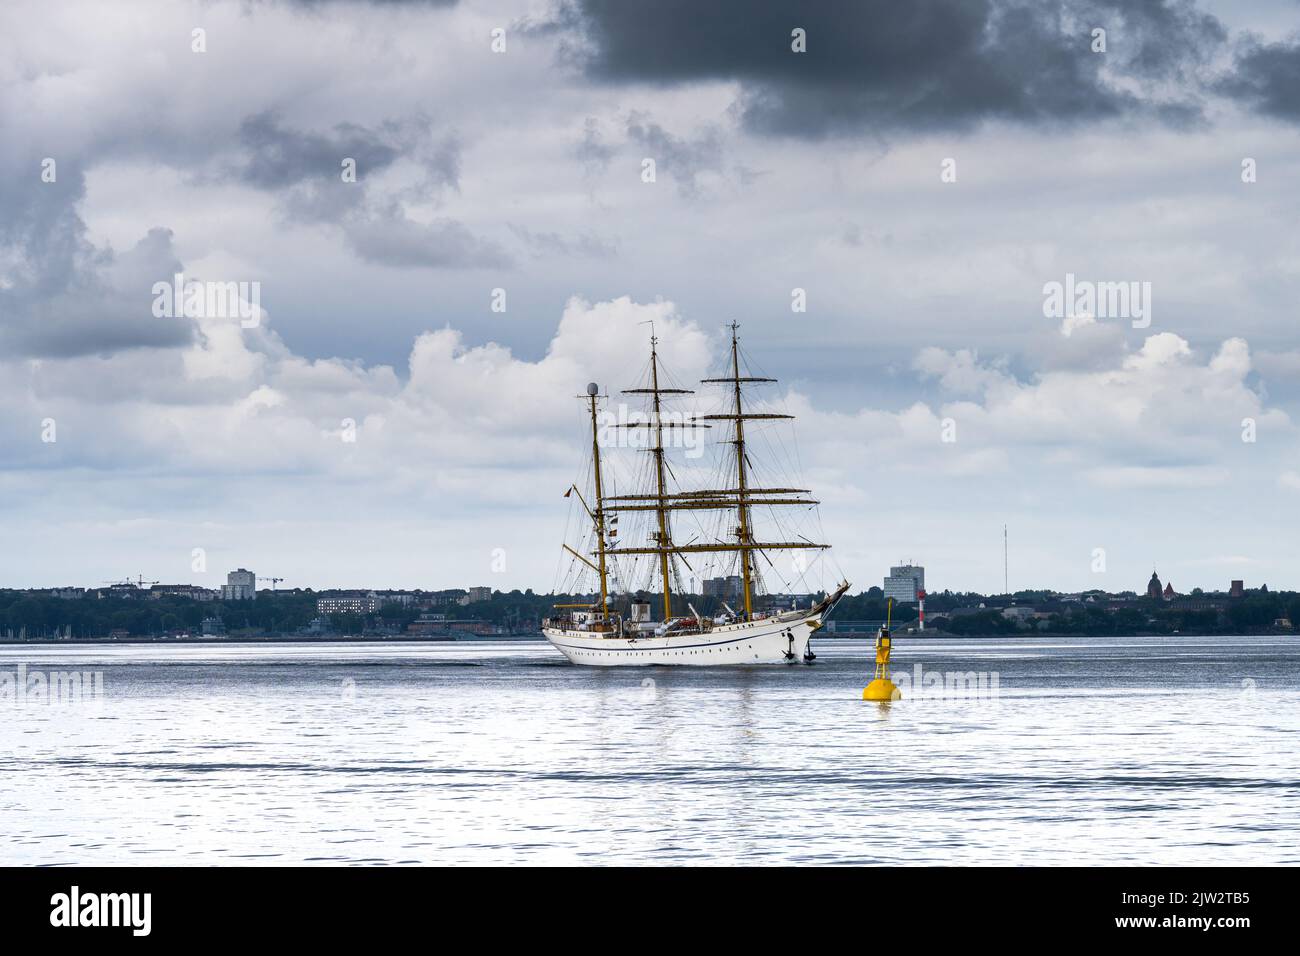 Das Segelschulschiff der Deutschen Marine die Bark Gorch Fock in der Kieler Förde mit dramatischem Himmel in Richtung Ostsee fahrend Foto Stock